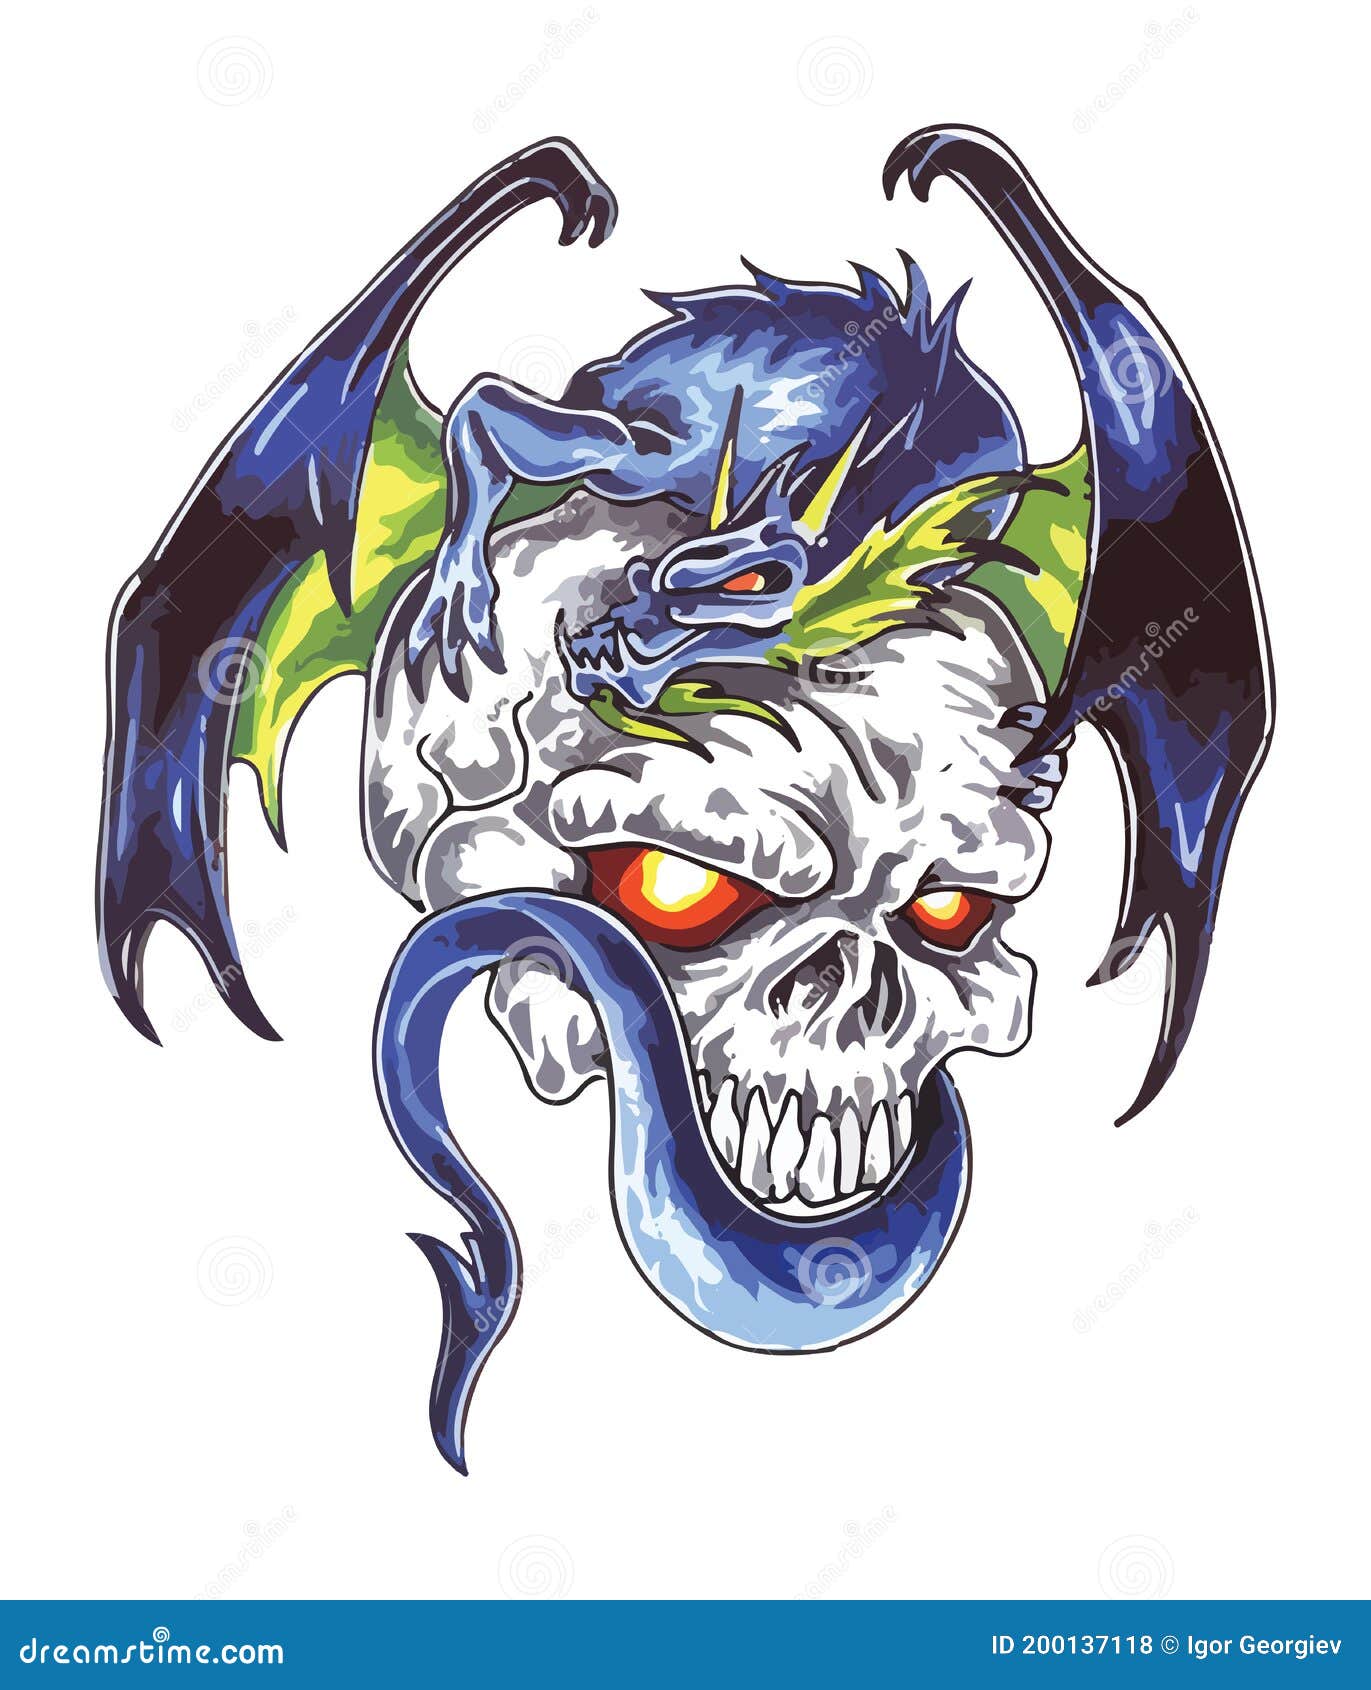 27 skull and dragon tattoo ideas | skull, skull art, skull tattoos